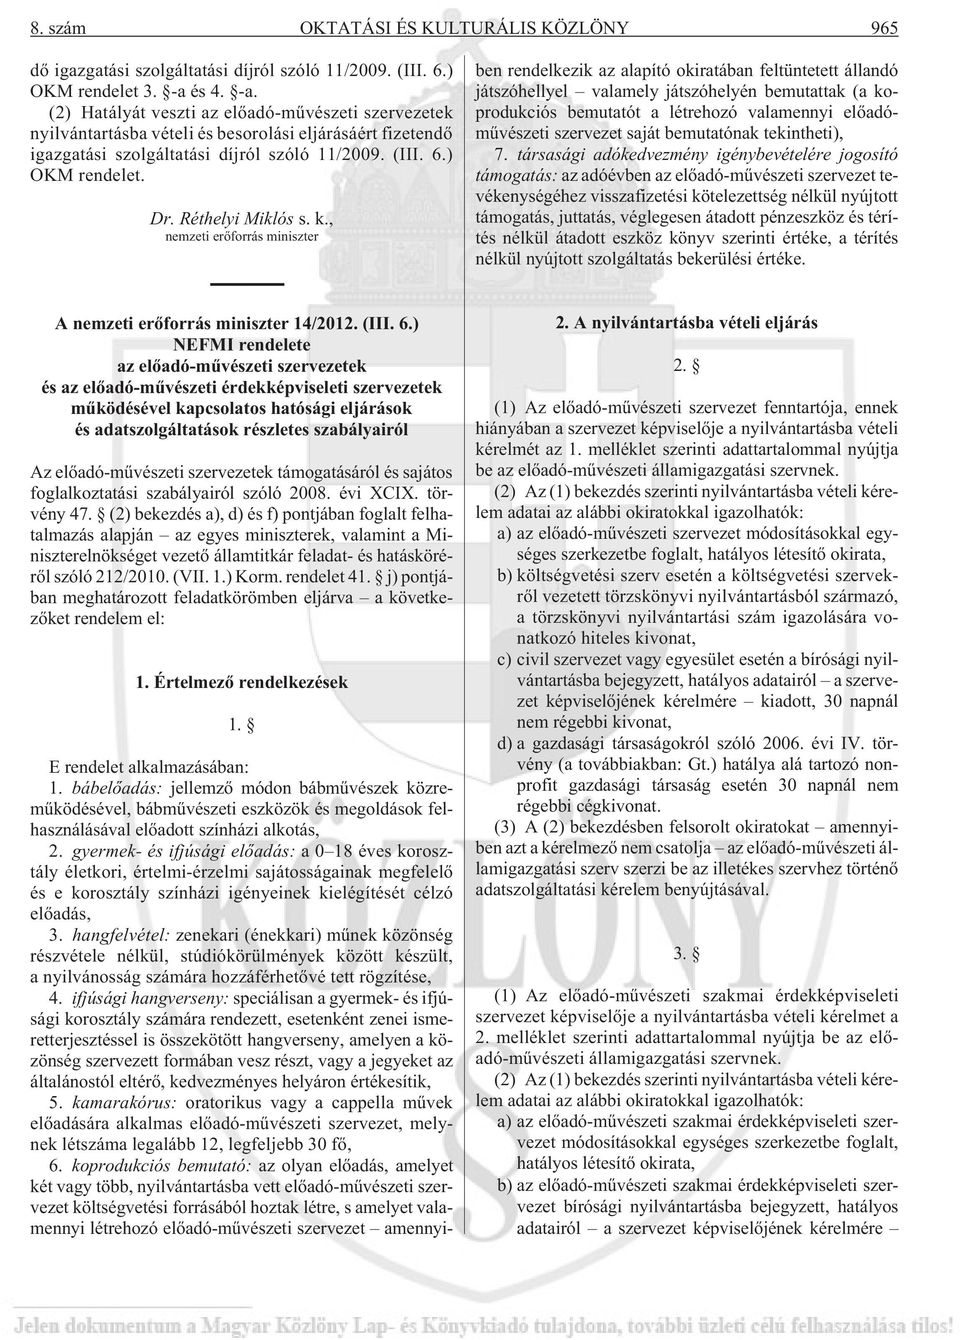 Réthelyi Miklós s. k., nemzeti erõforrás miniszter E rendelet alkalmazásában: 1.